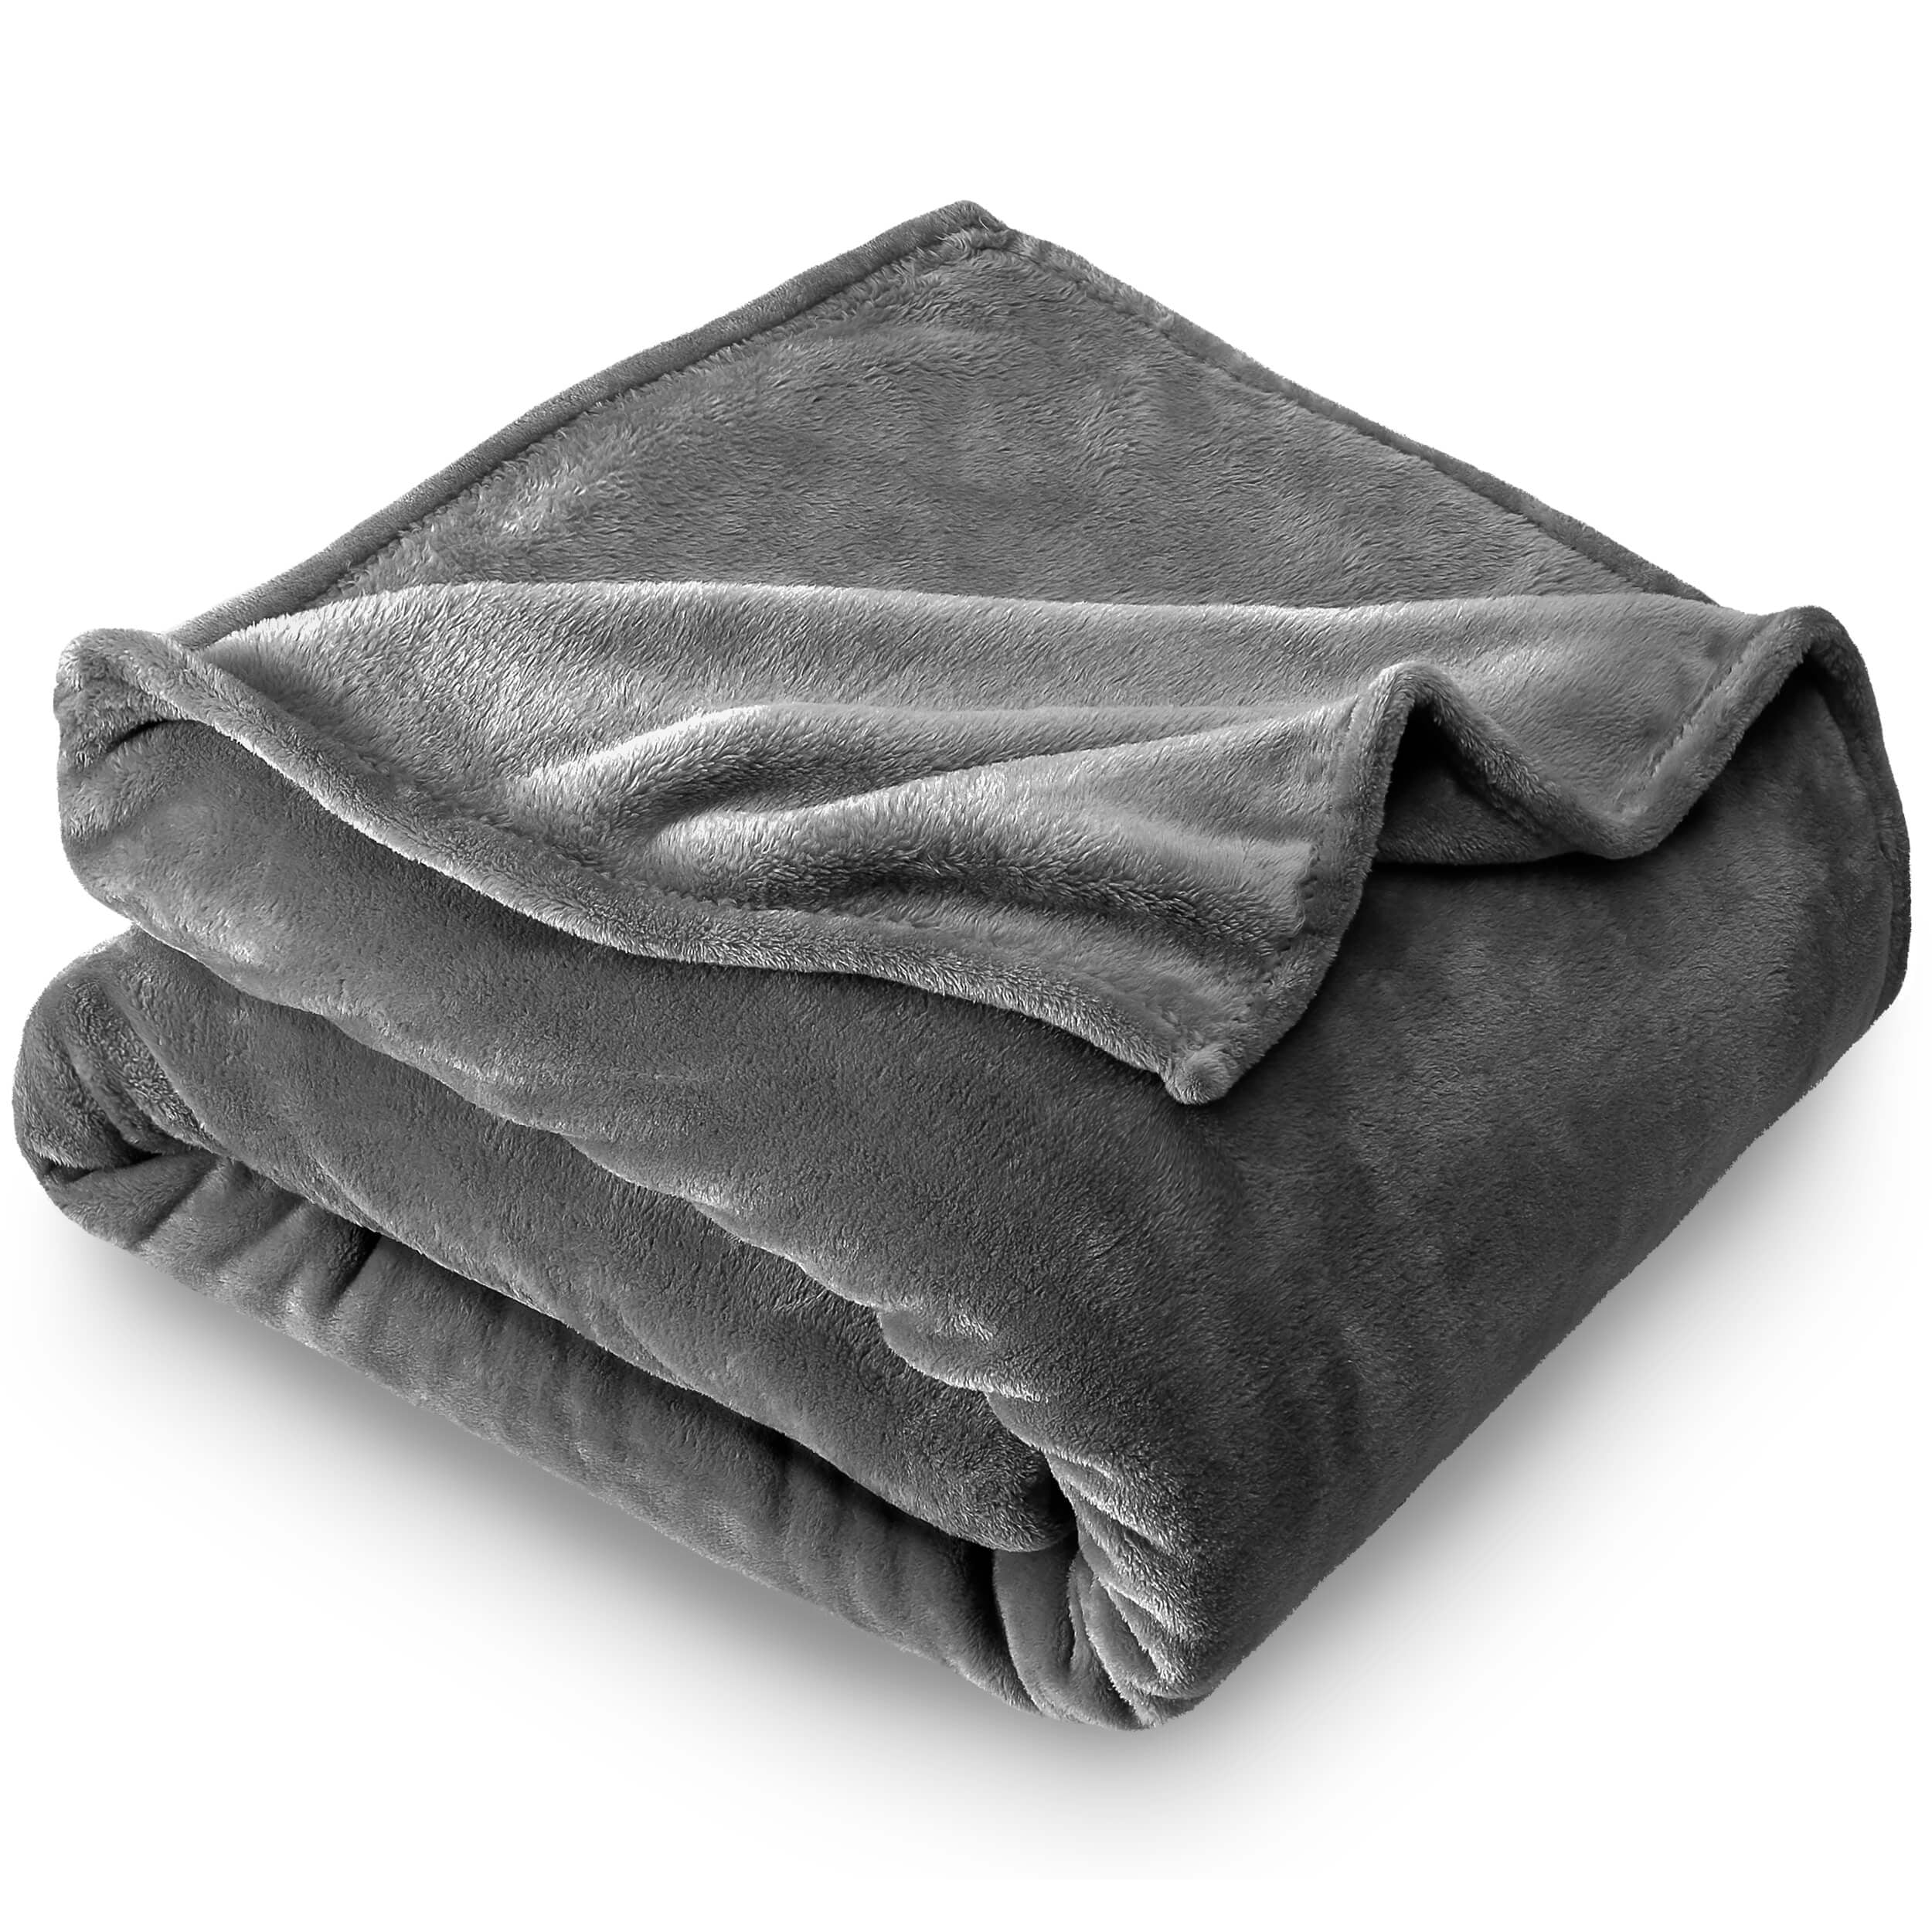 Bare Home Ultra Soft Microplush Velvet Blanket - Luxurious Fuzzy Fleece